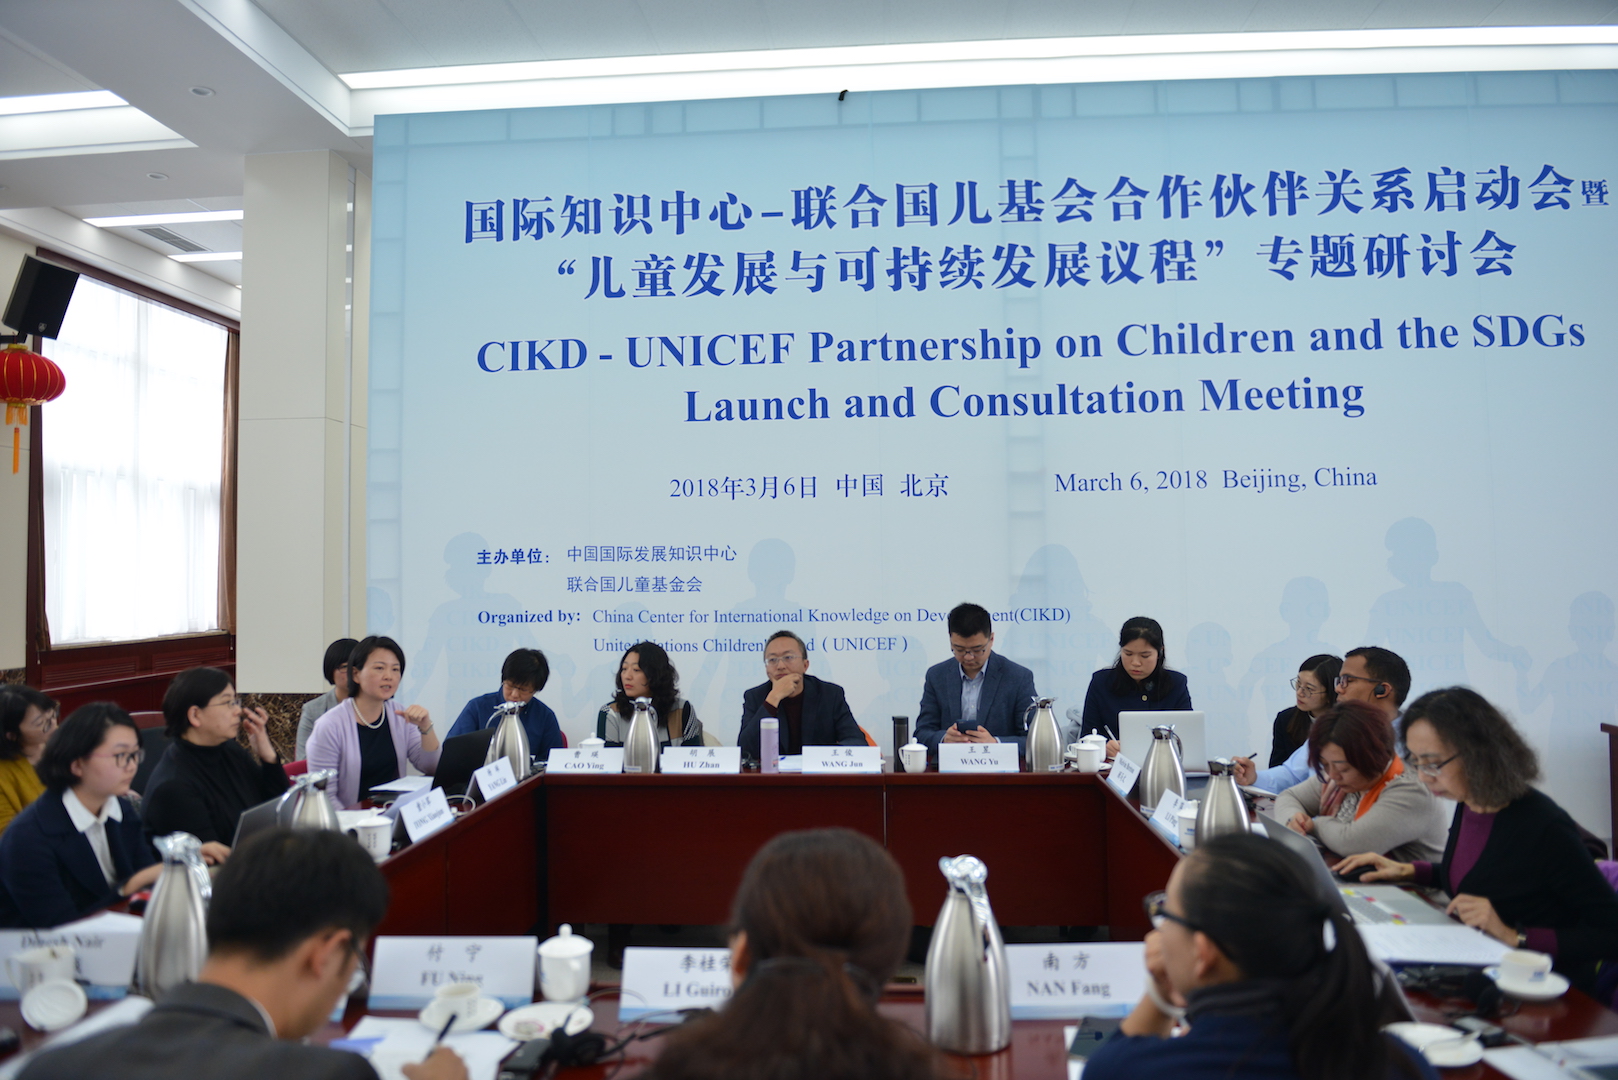 中国国际发展知识中心与联合国儿童基金会建立合作伙伴关系，共同推动儿童事业发展与进步